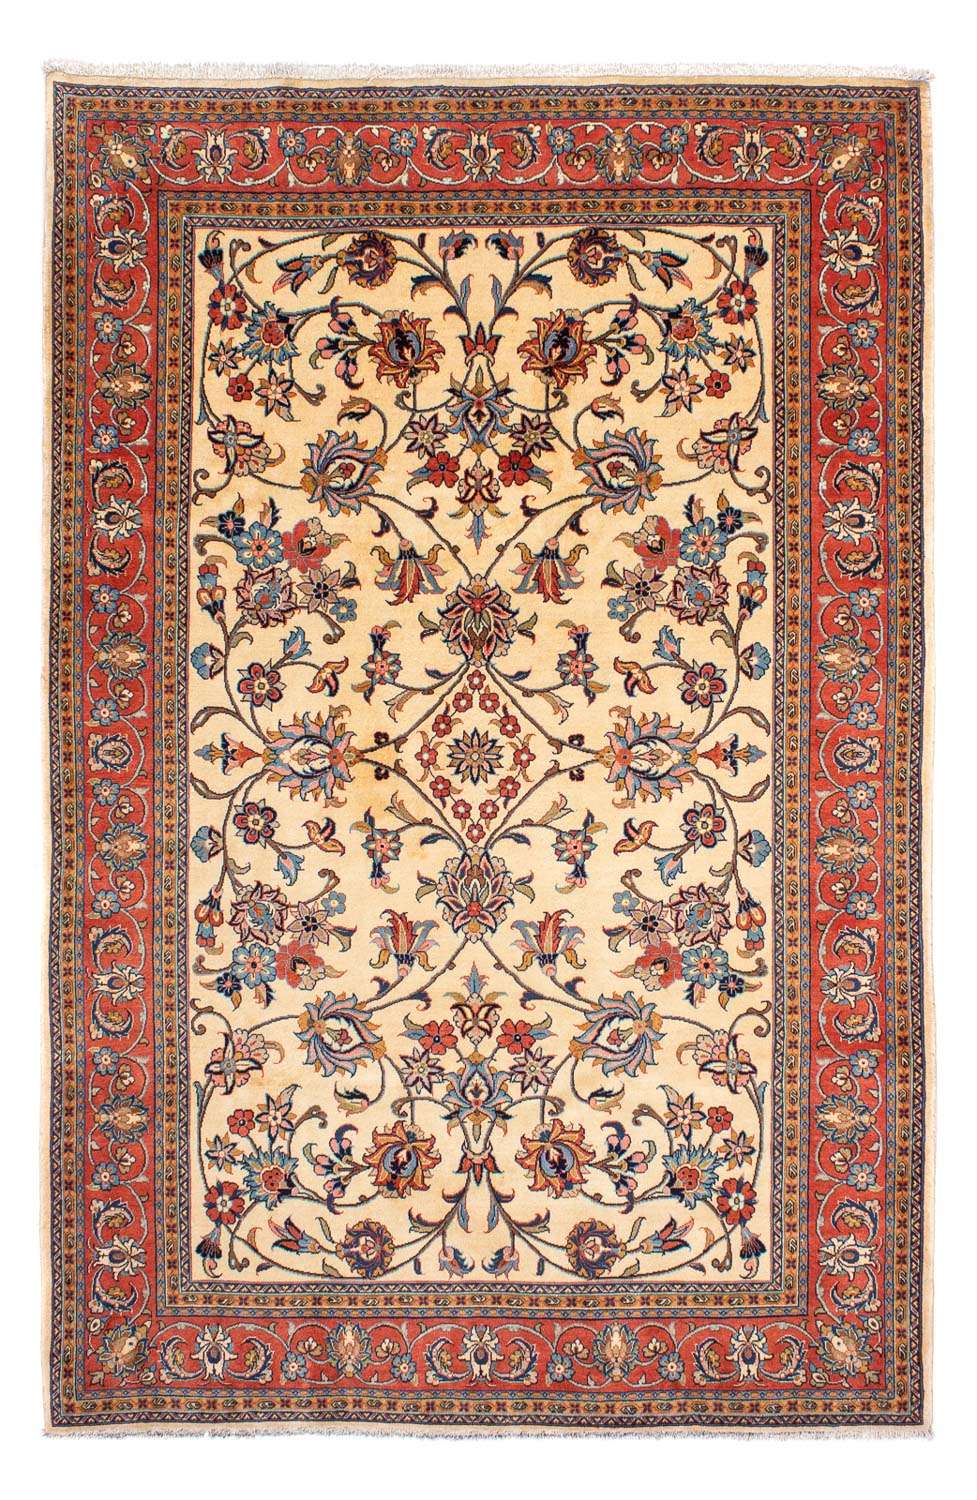 Perský koberec - Klasický - 298 x 205 cm - béžová